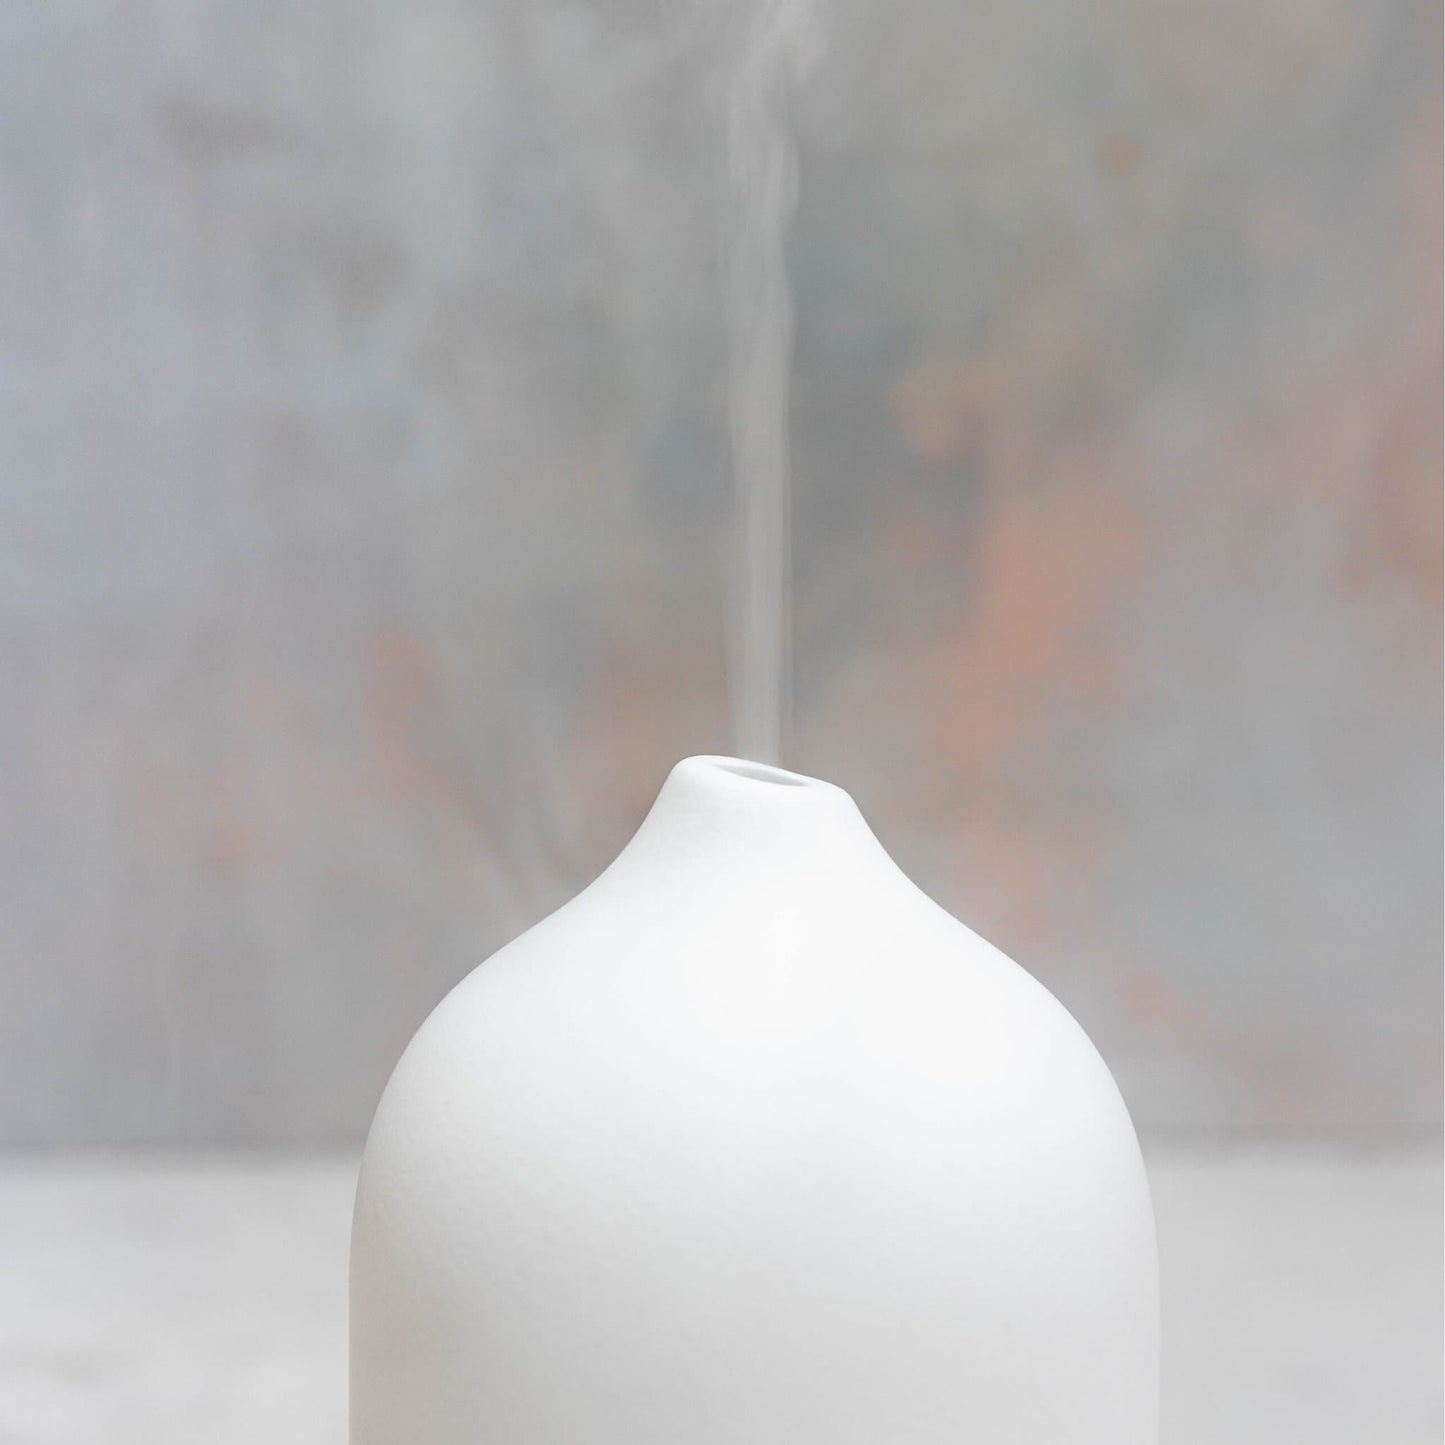 White Stone Oil Diffuser diffuser kotanical 